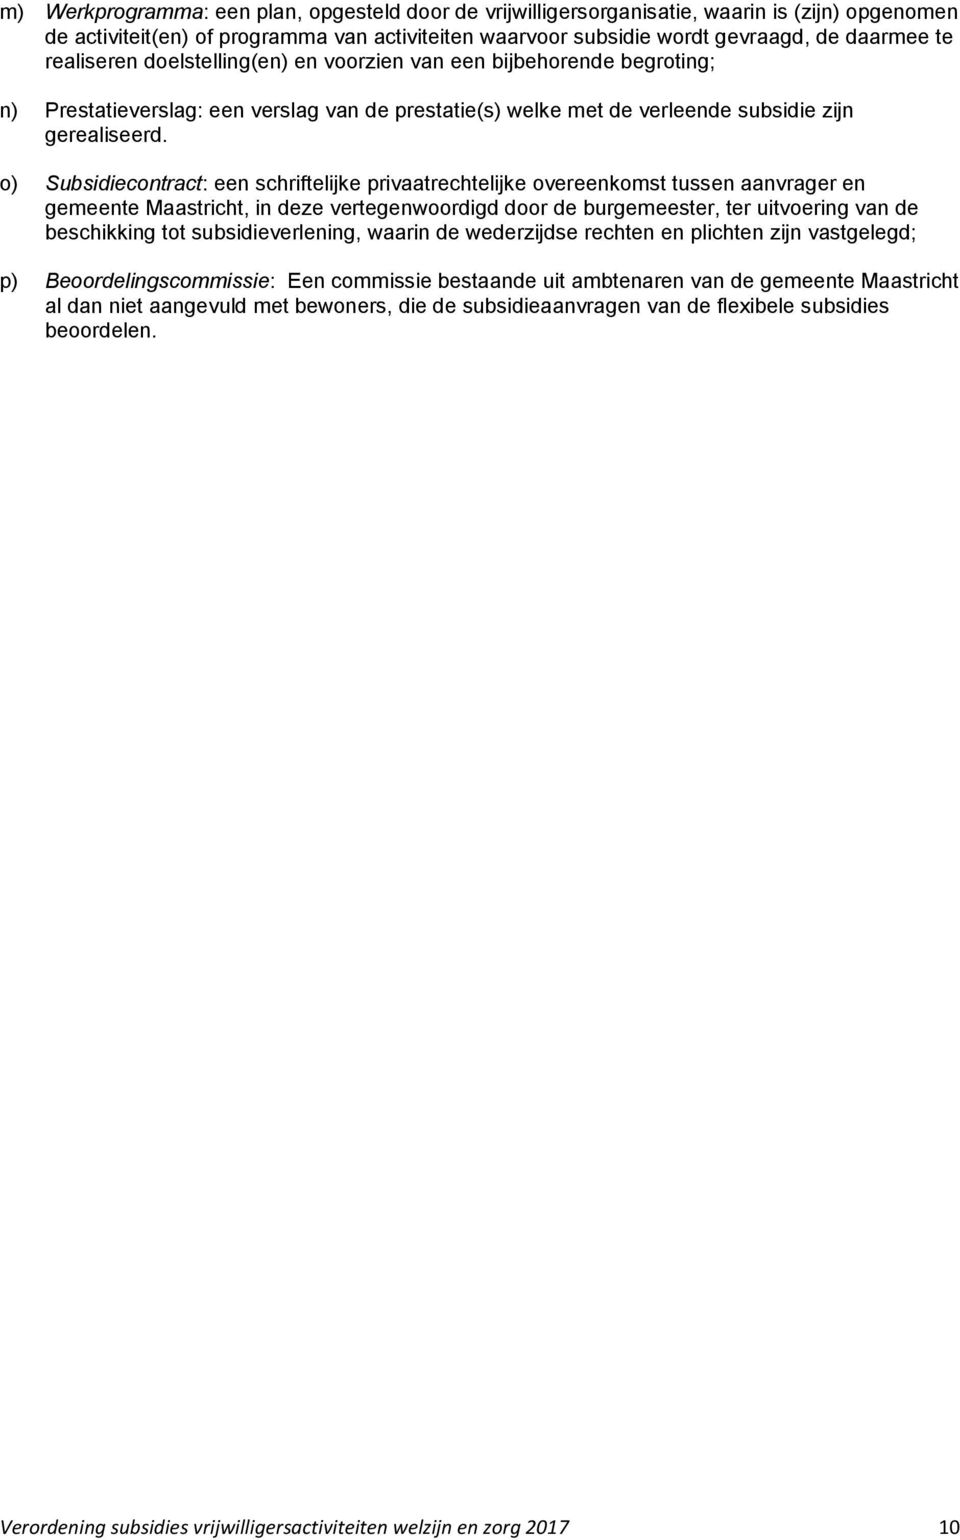 o) Subsidiecontract: een schriftelijke privaatrechtelijke overeenkomst tussen aanvrager en gemeente Maastricht, in deze vertegenwoordigd door de burgemeester, ter uitvoering van de beschikking tot